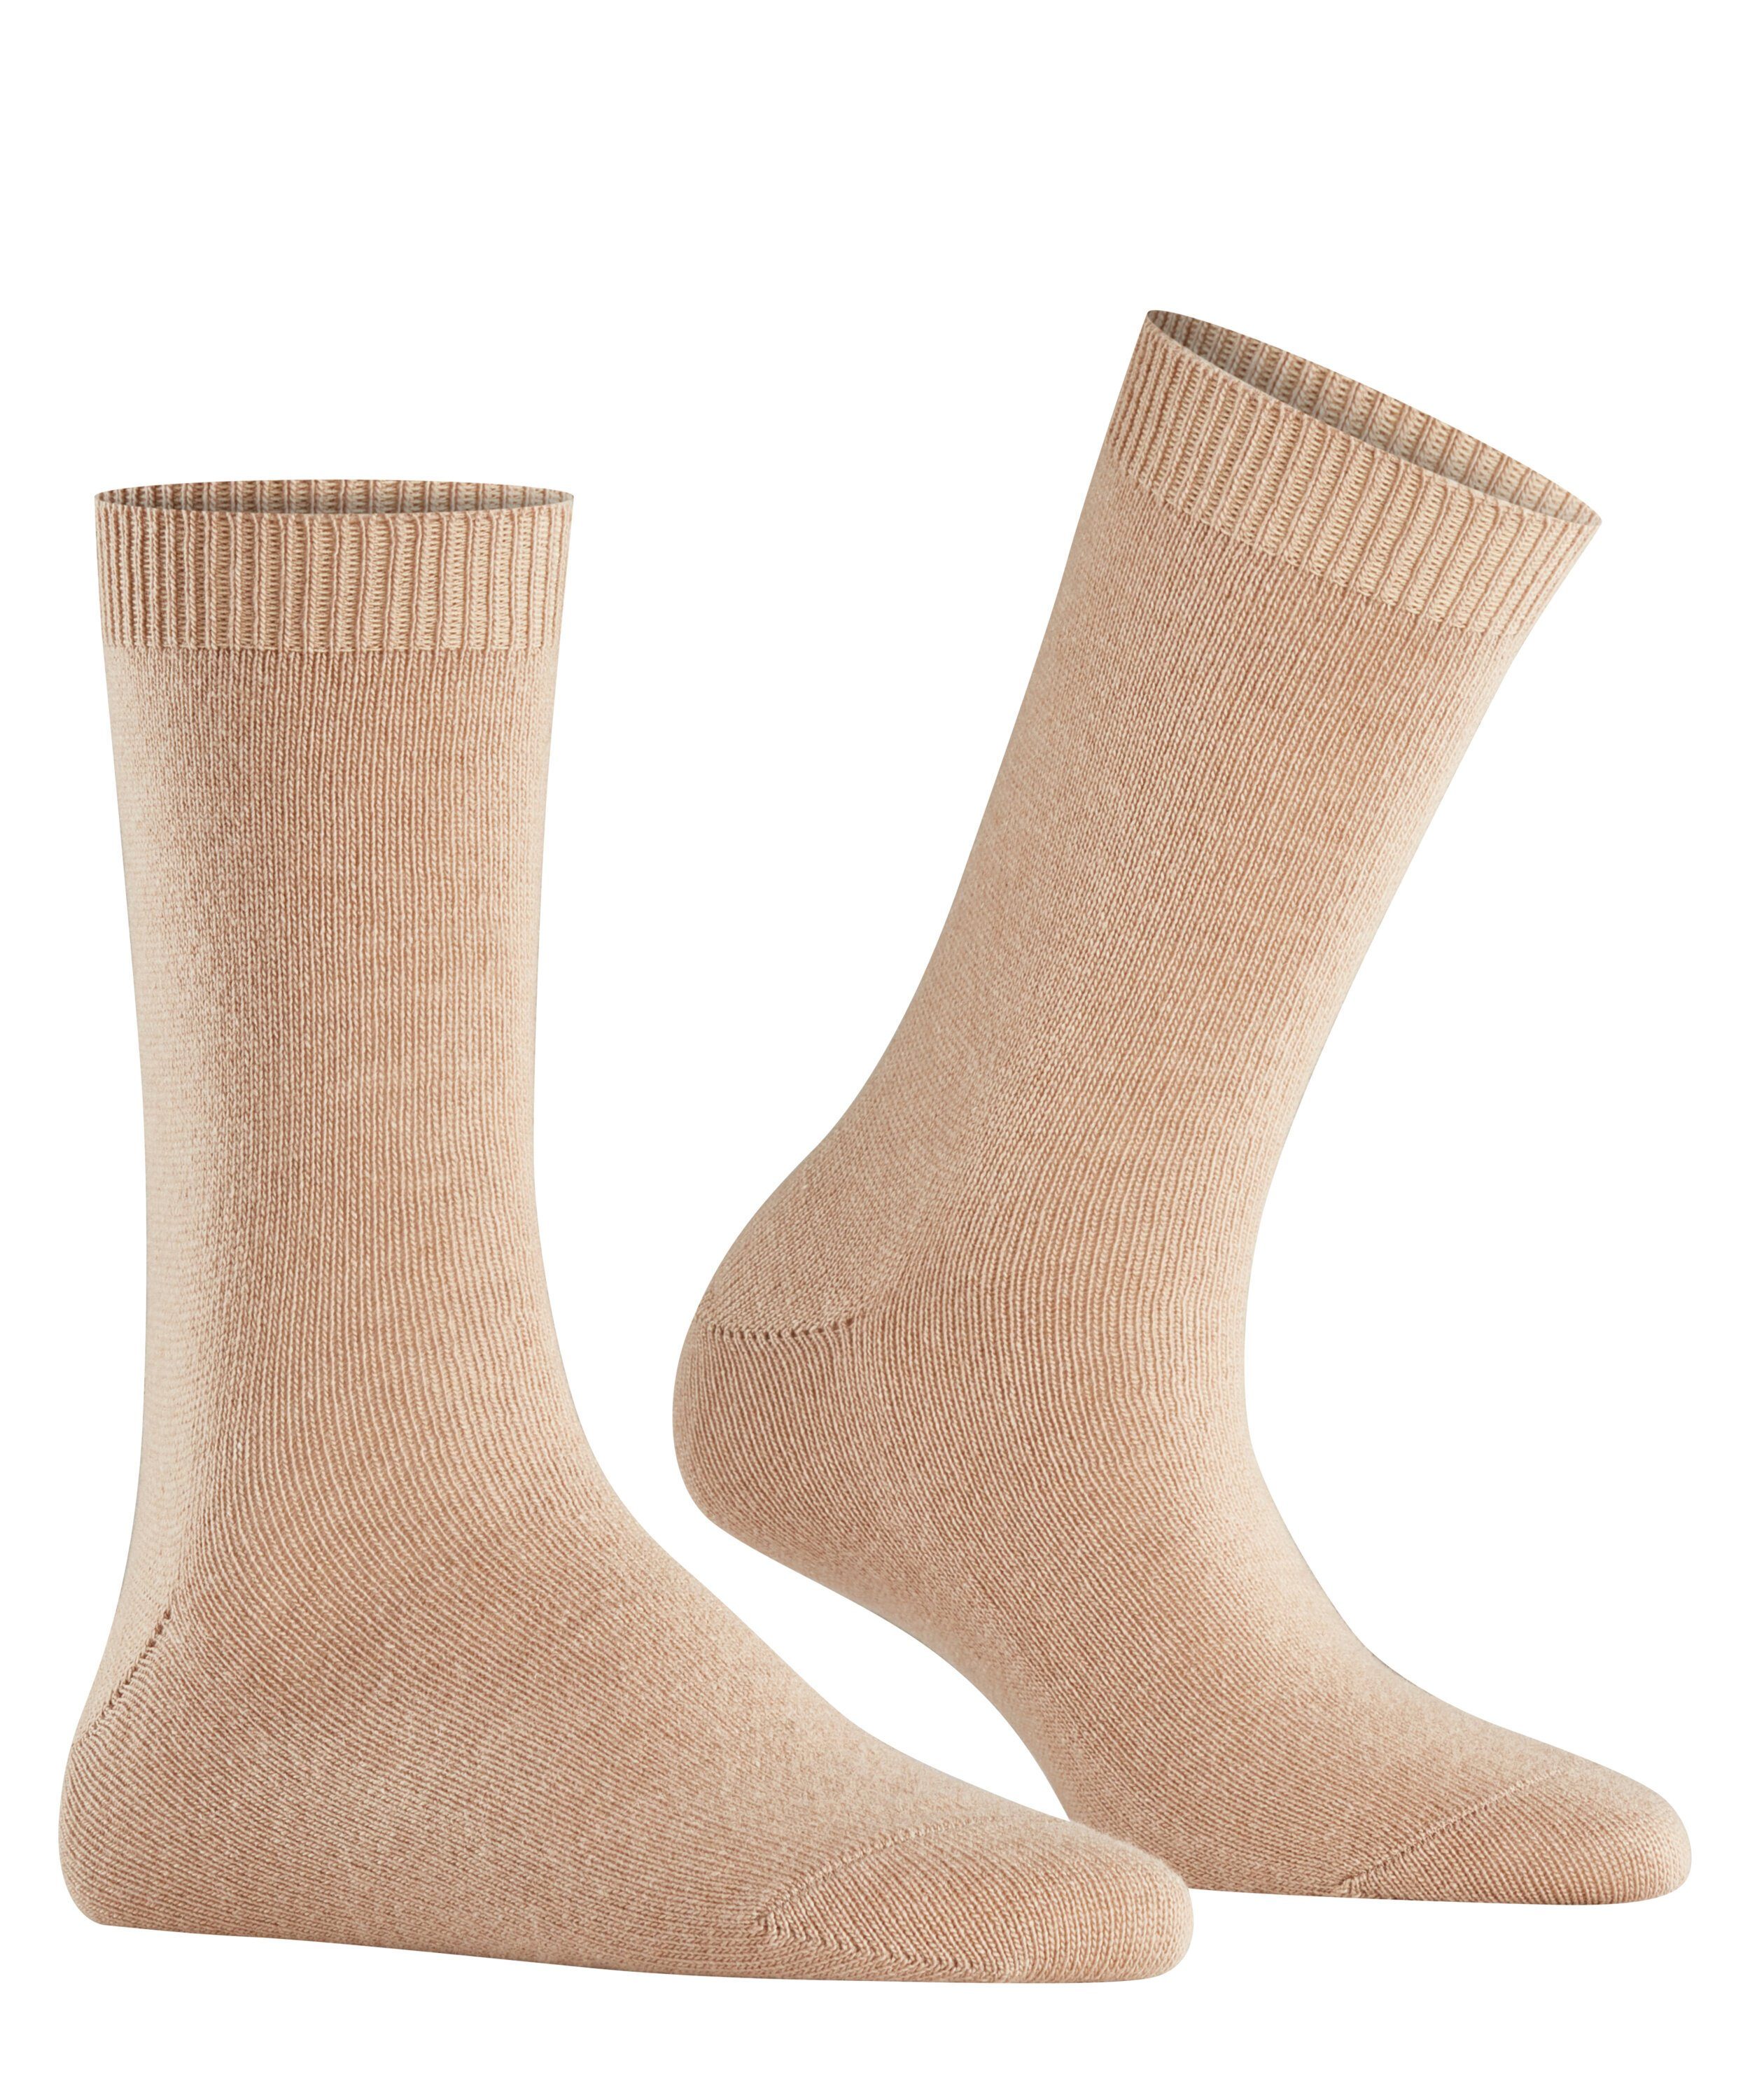 (1-Paar) Socken (4220) camel Cosy Wool FALKE